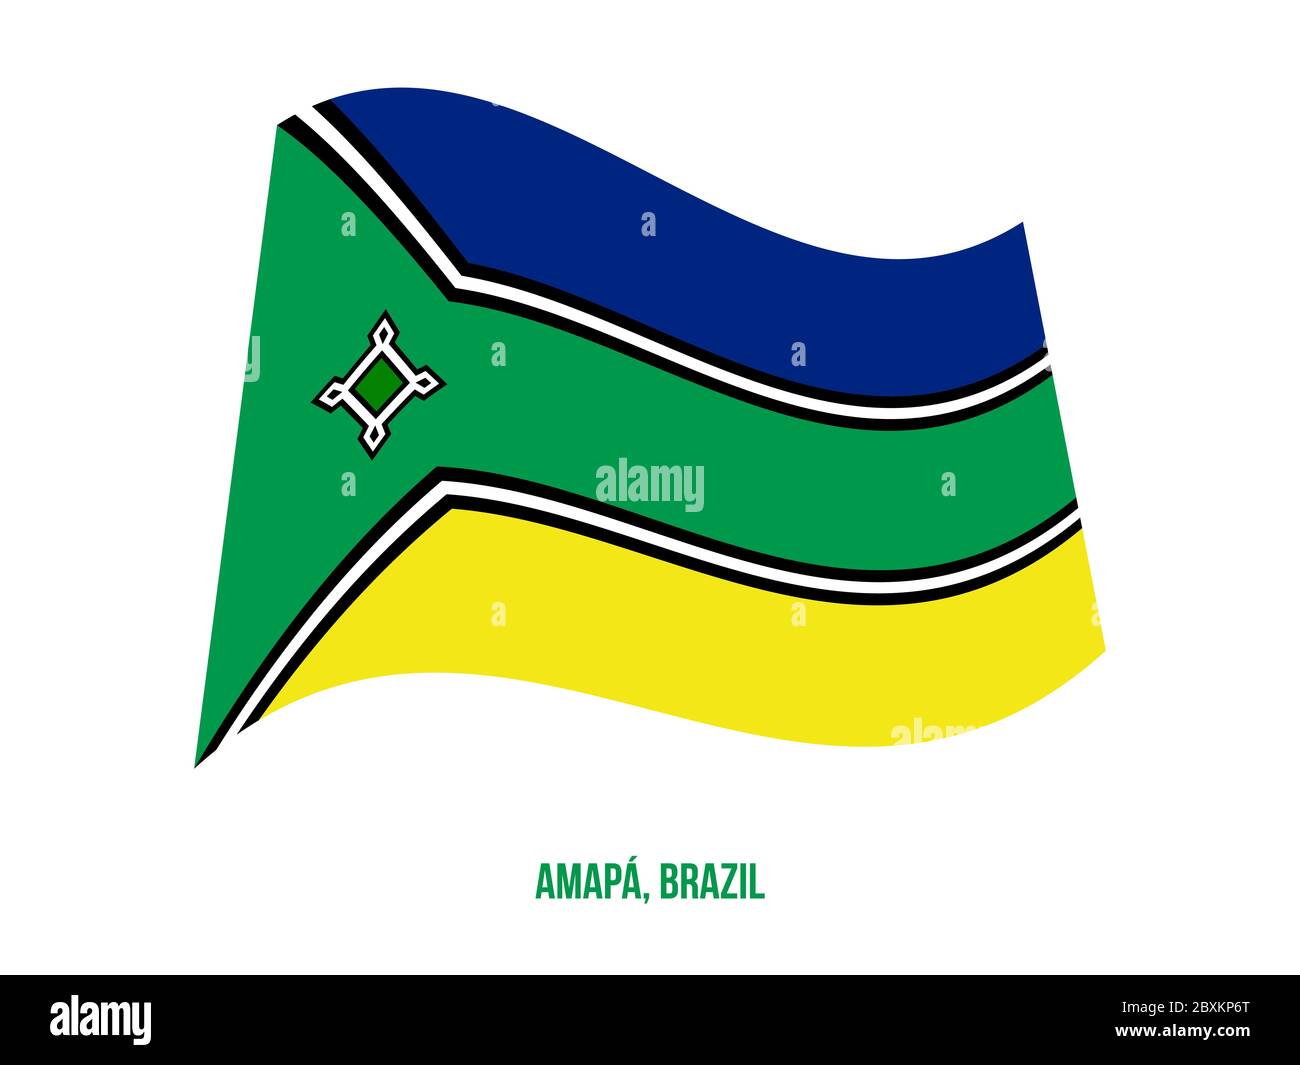 Amapa Flag Waving Vector Illustration on White Background. States Flag of Brazil. Stock Vector